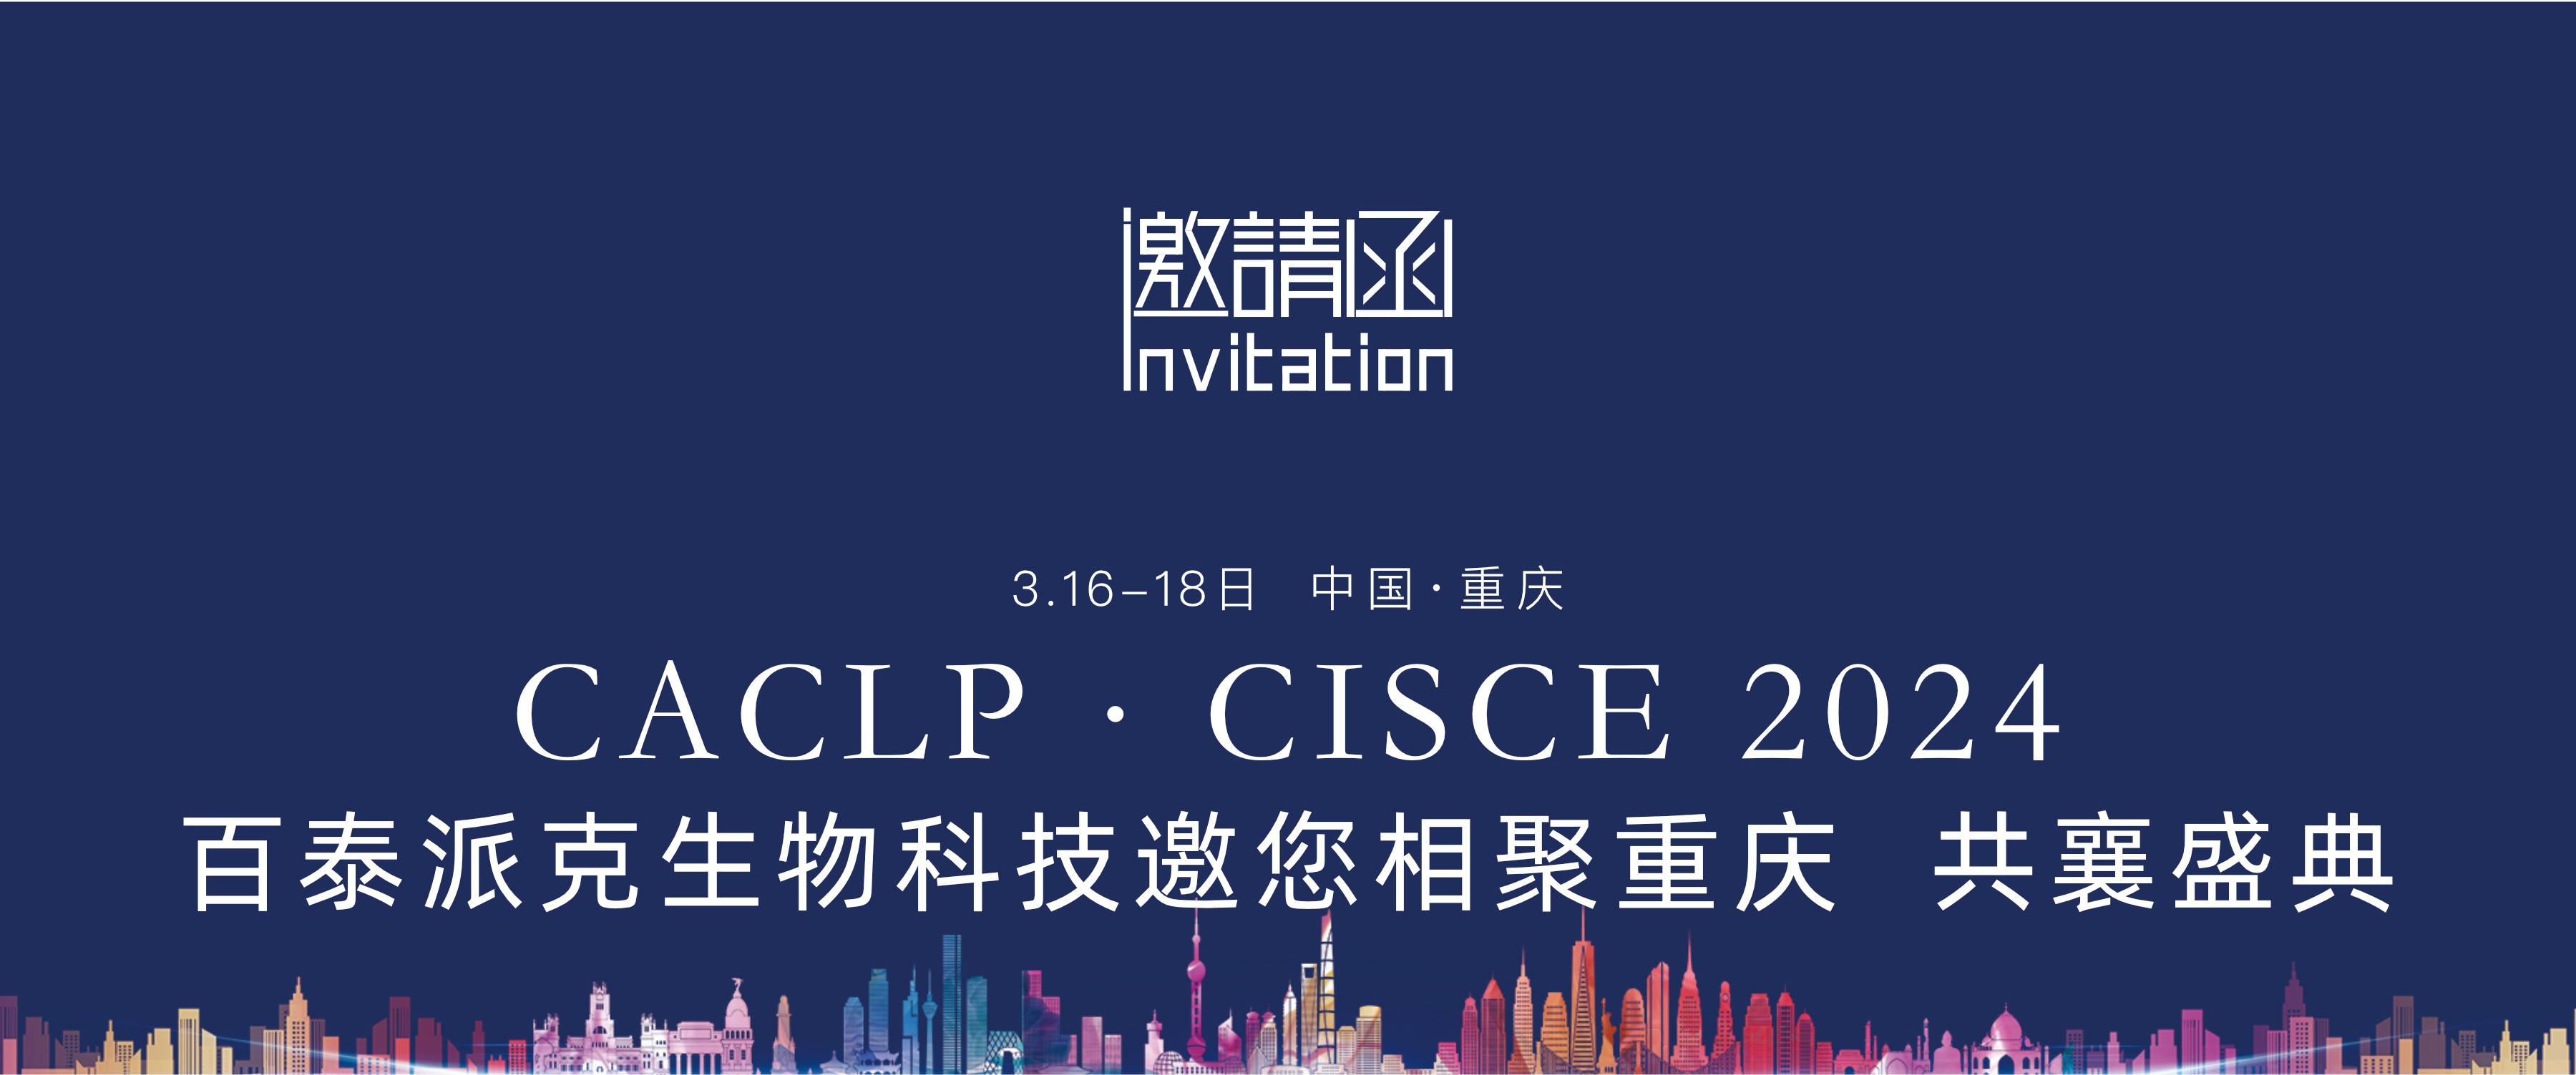 邀请函 | 百泰派克生物科技与您相聚重庆，共襄CACLP·CISCE 2024展会盛典